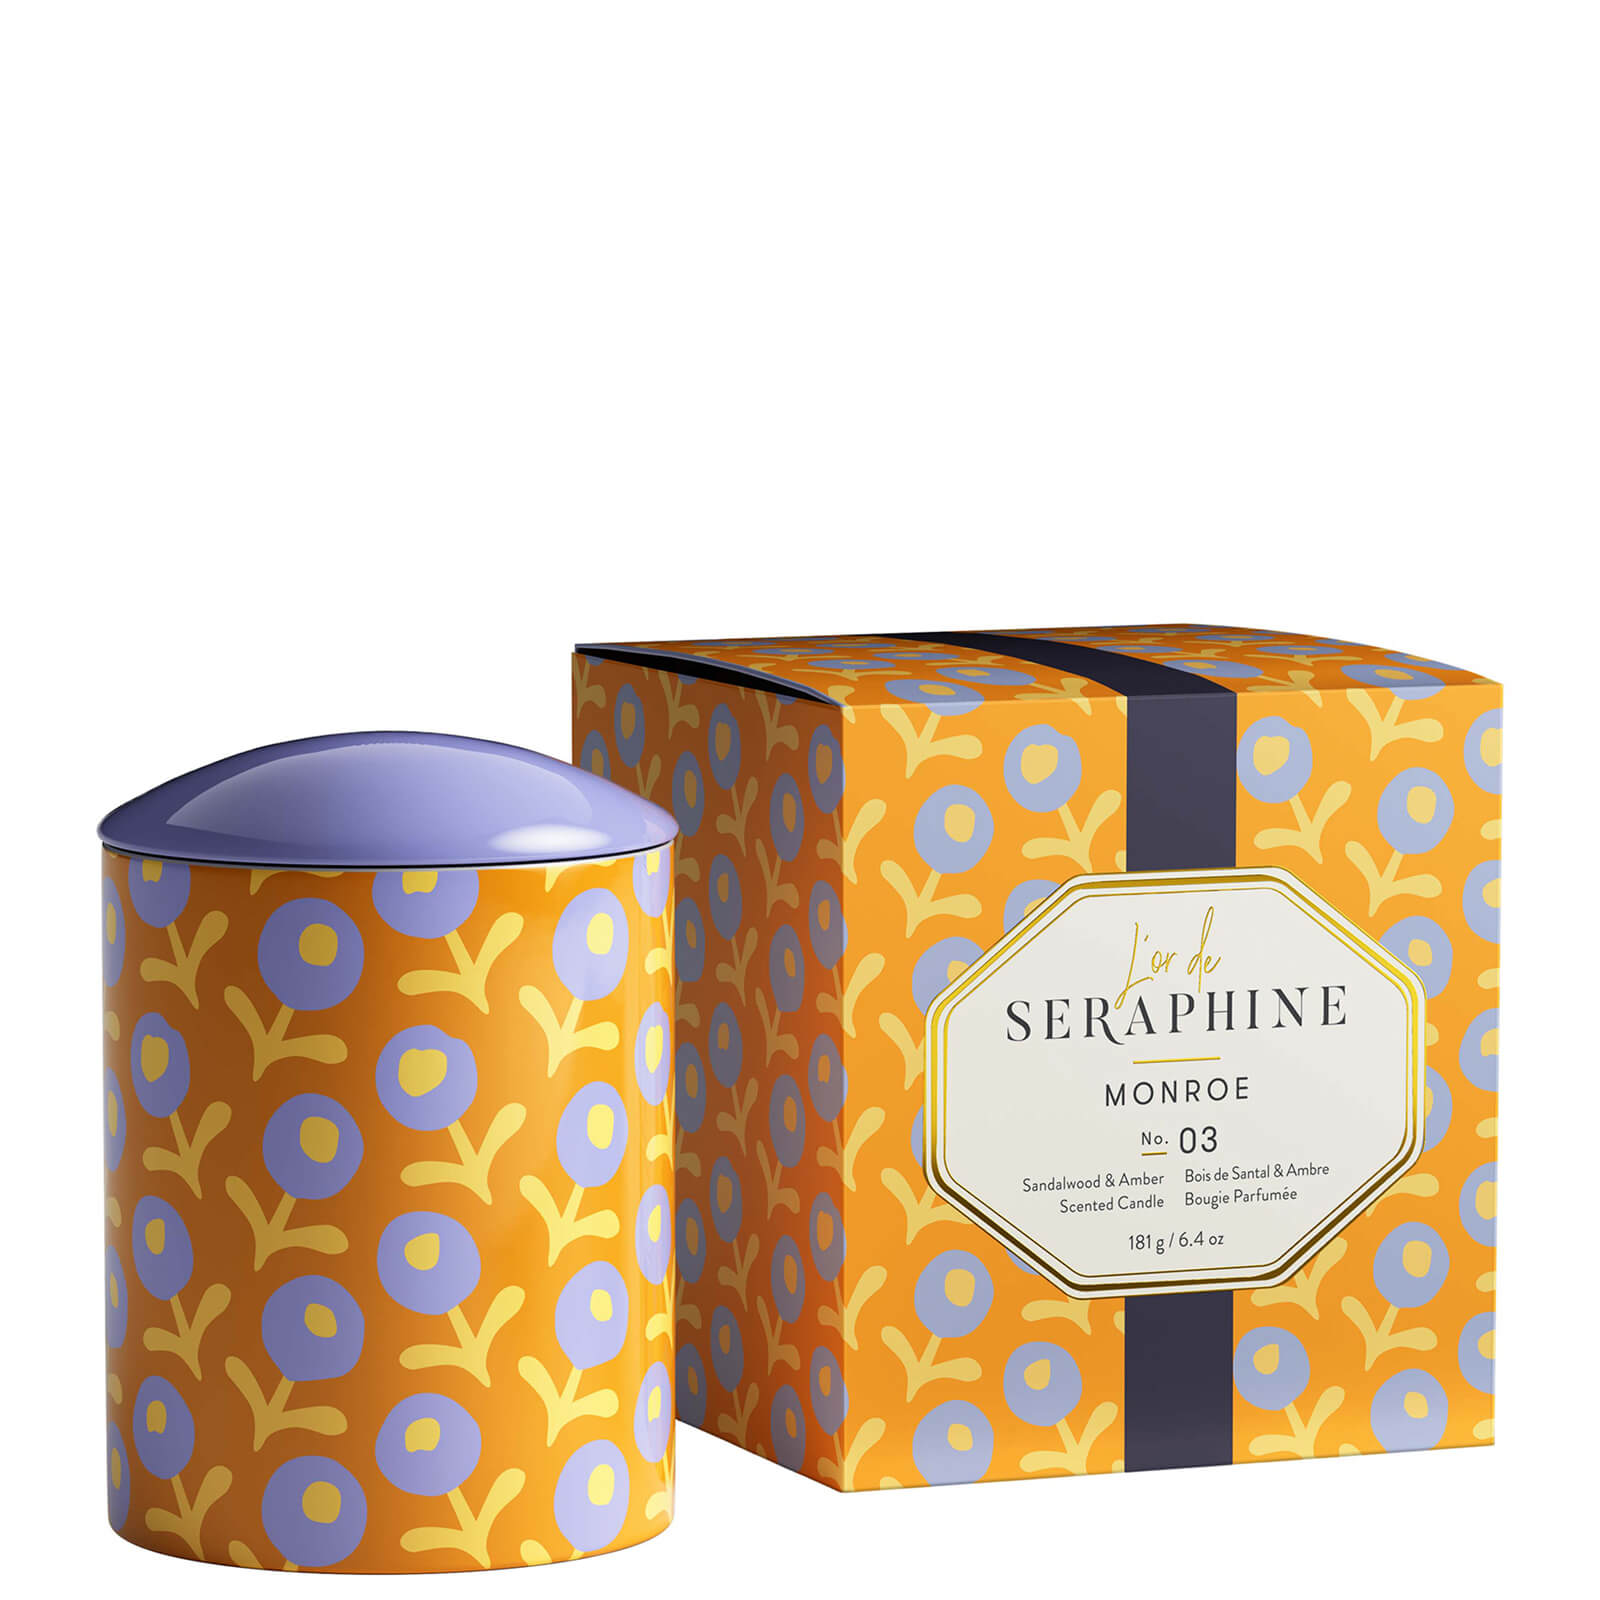 L'or De Seraphine Monroe Medium Ceramic Candle 6.4 oz In Yellow